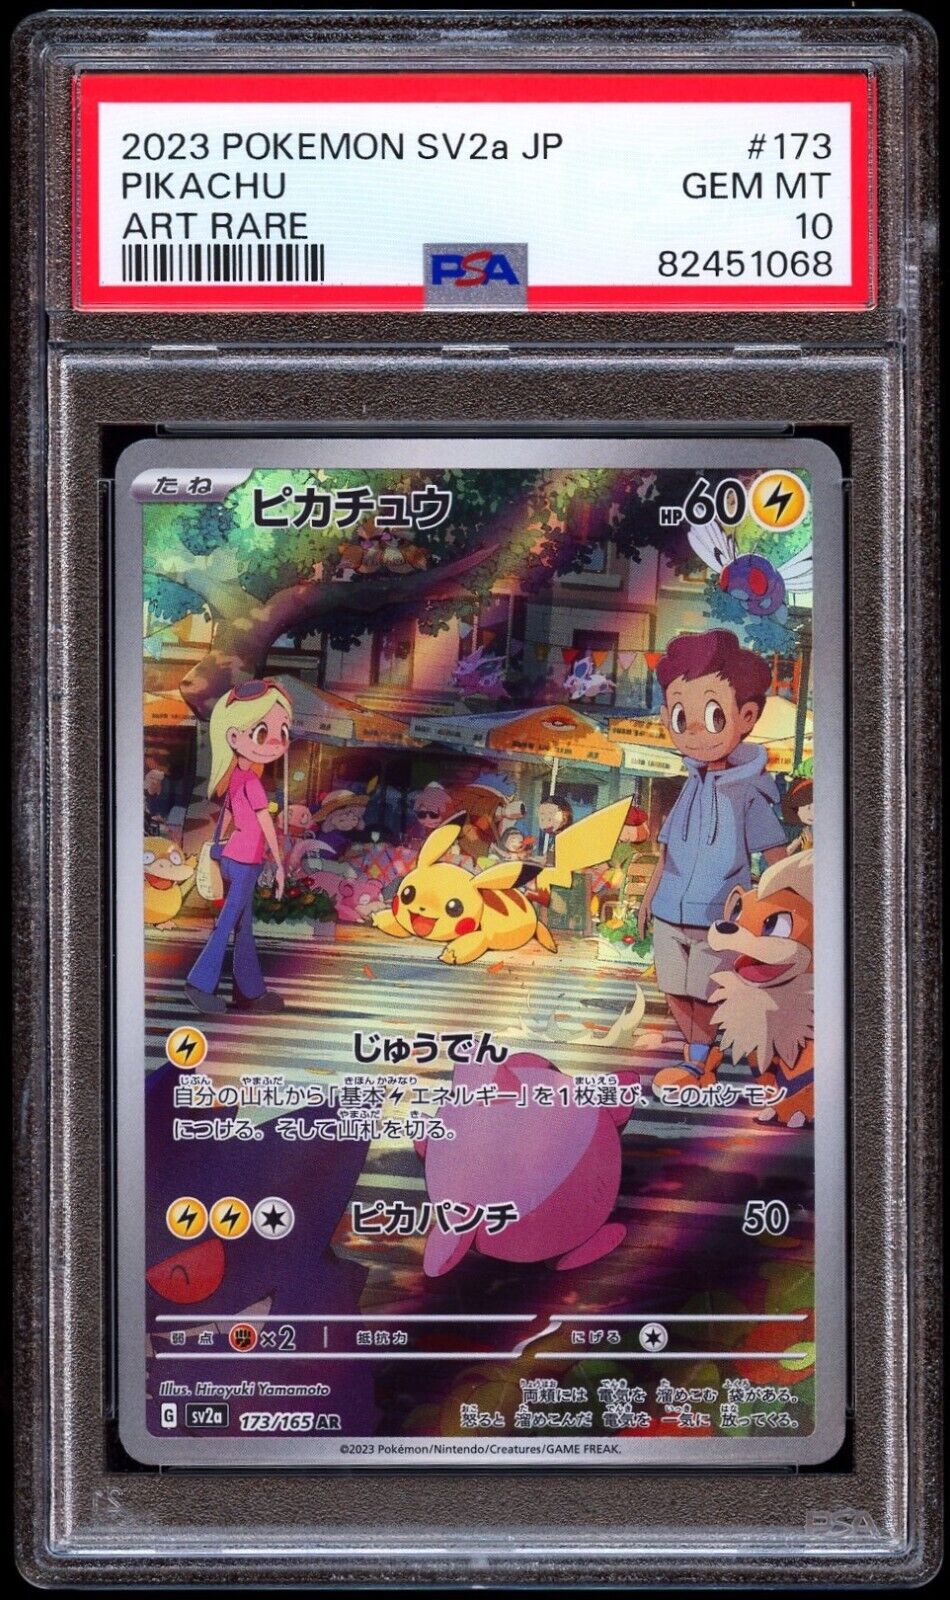 2023 Pokemon Japanese 151 Sv2a Pikachu AR 173/165 PSA 10